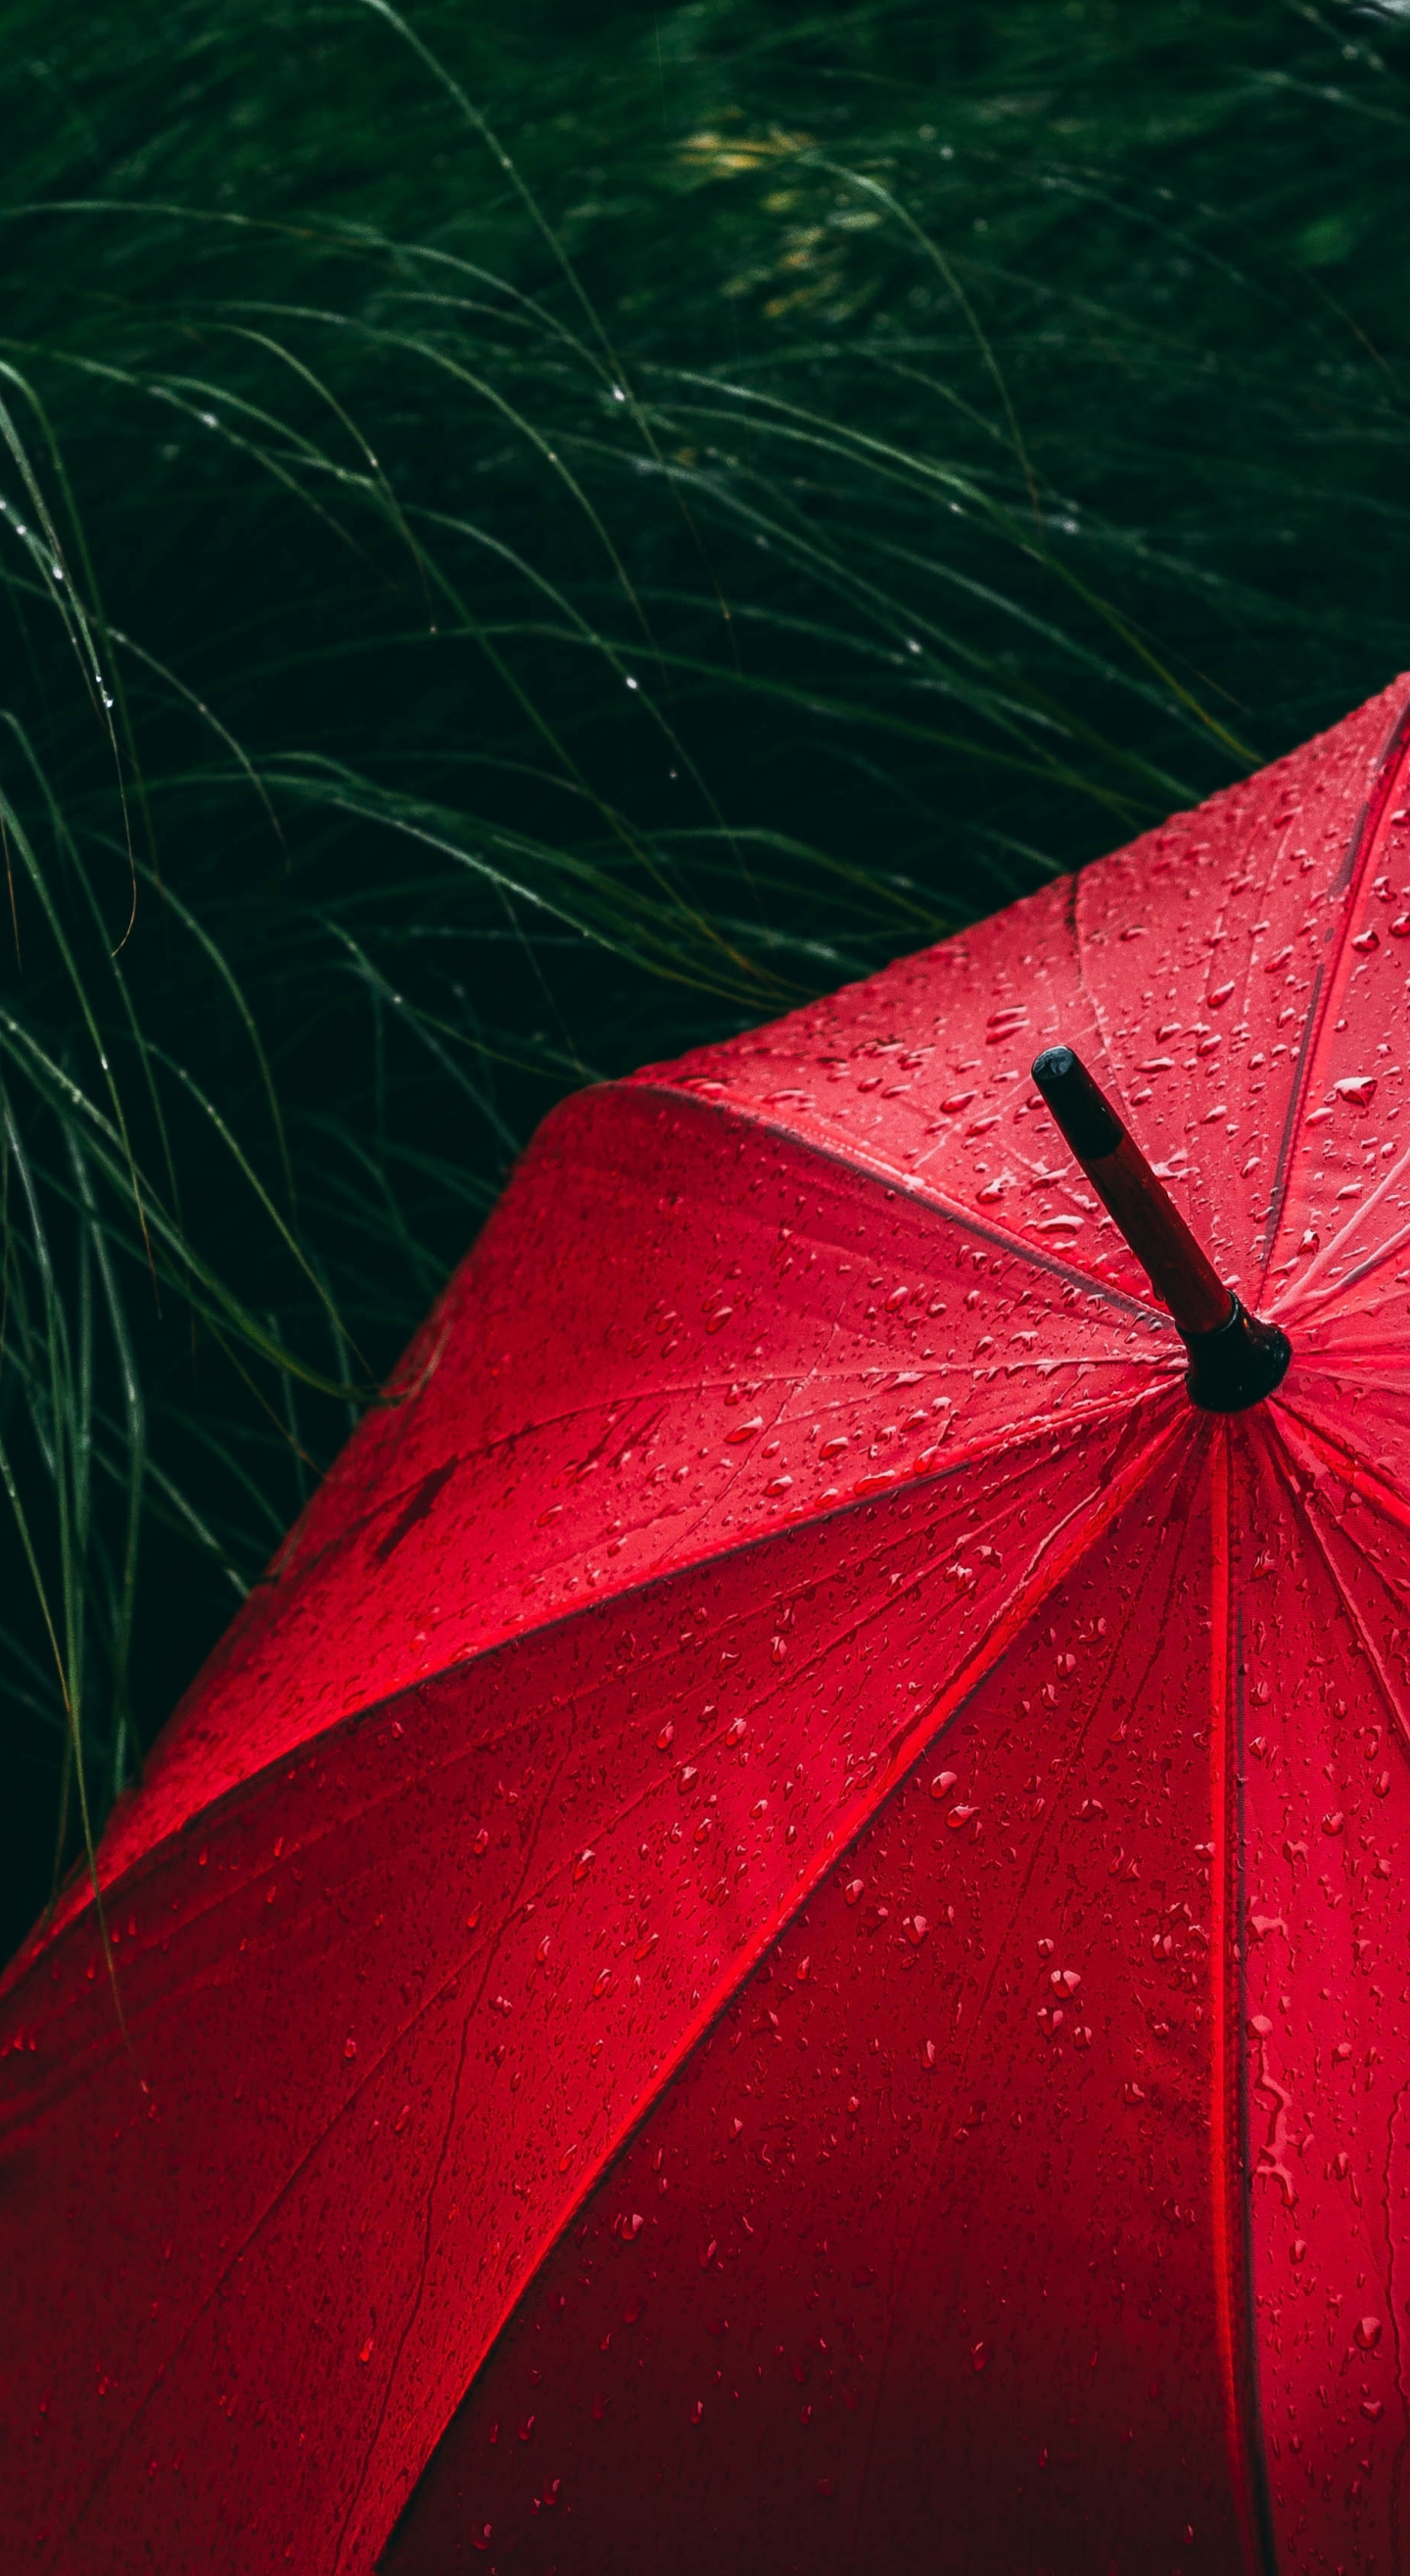 Umbrella red, rain droplets, rain, 1440x2630 wallpaper